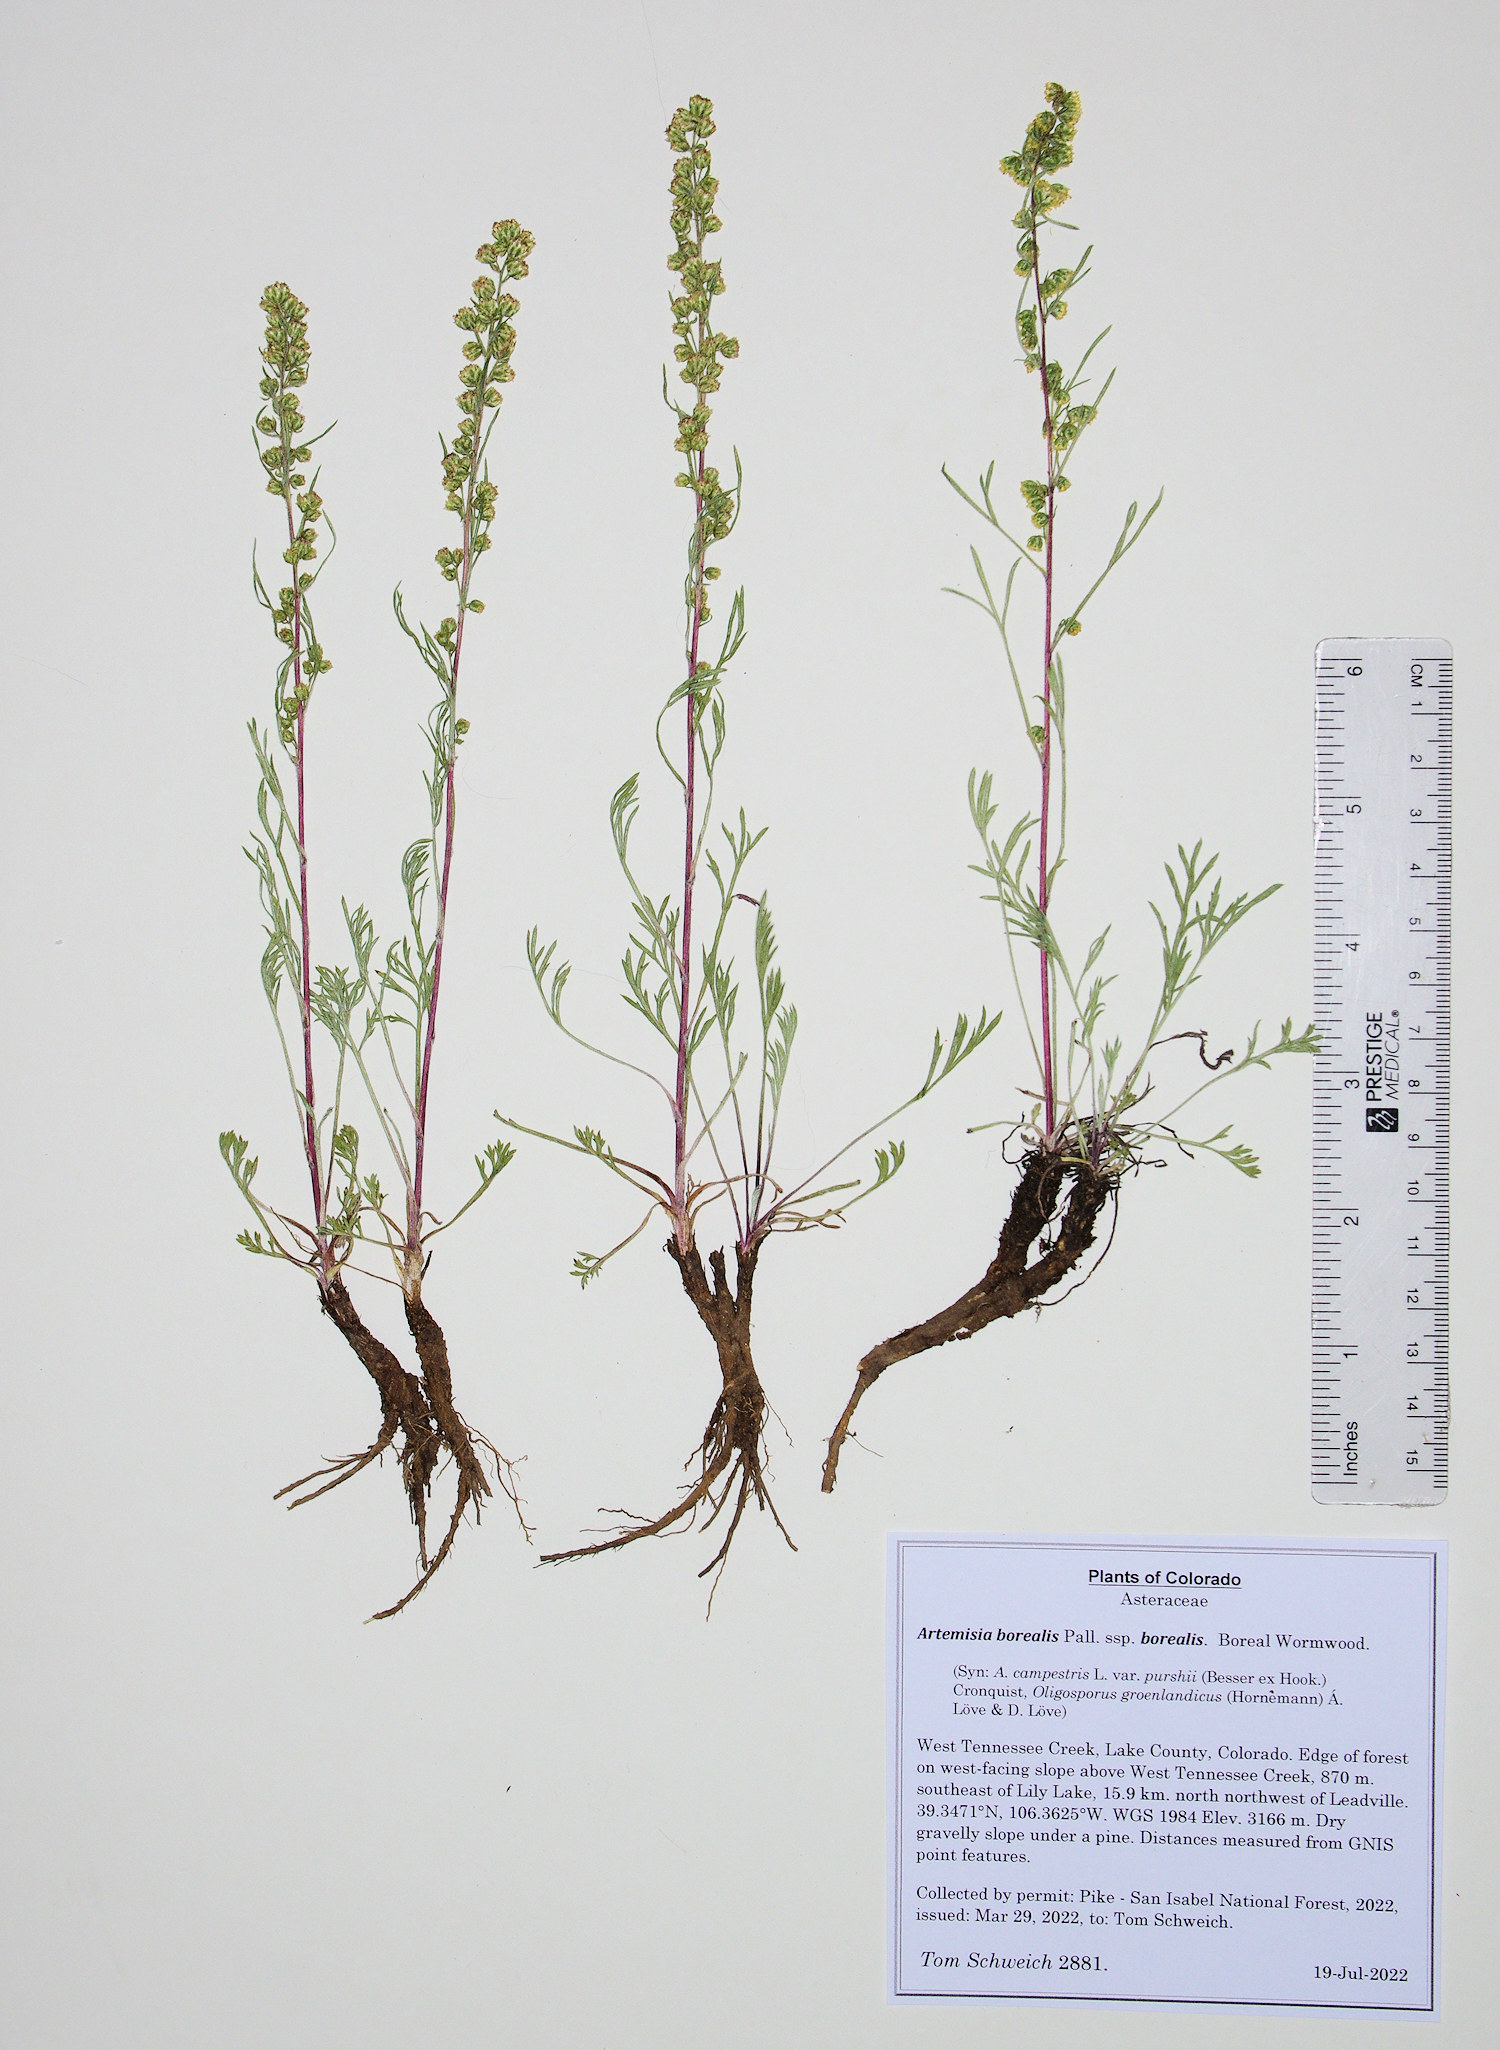 Asteraceae Artemisia borealis borealis